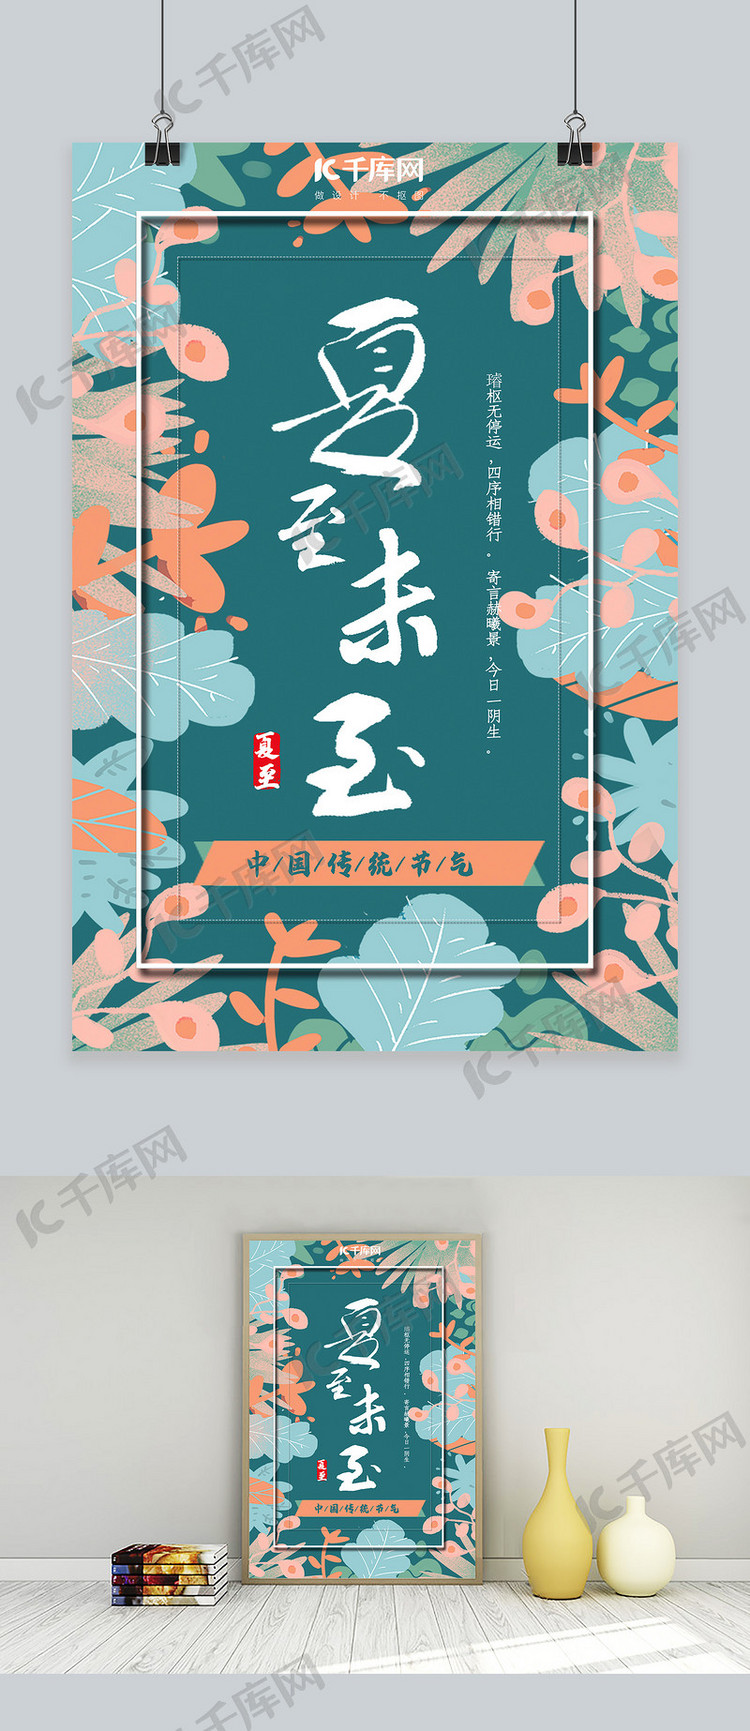 文艺清新中国传统节气夏至节气宣传海报